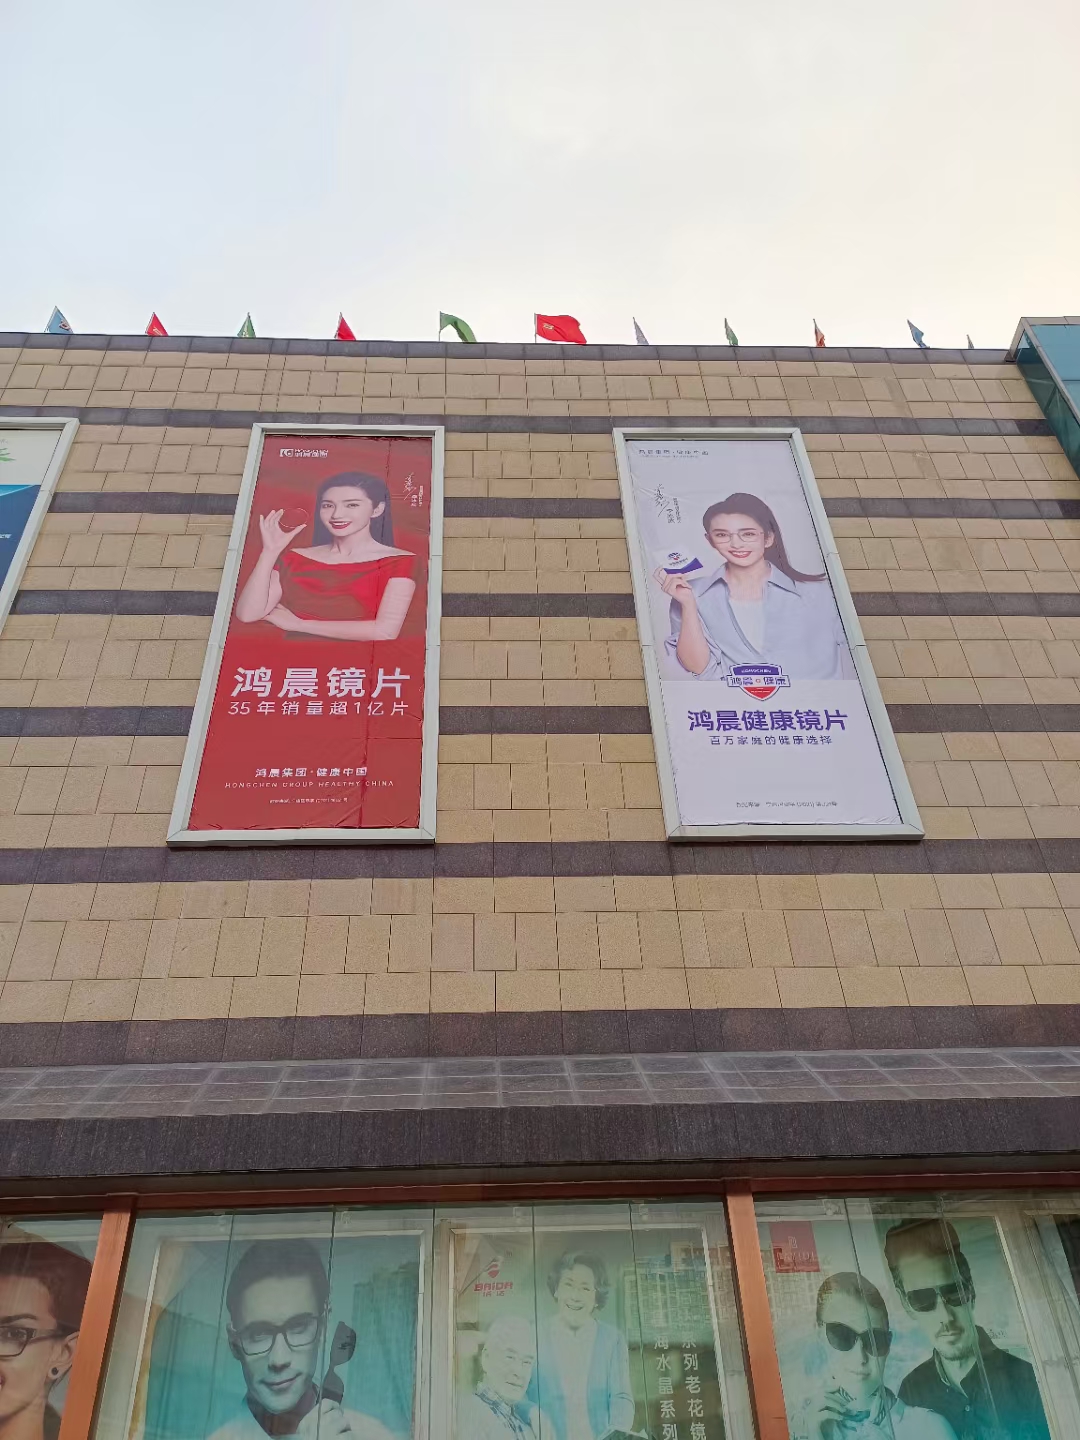 Nous arrivons!Nouvelle publicité sur le marché optique de la ville de Zhengzhou